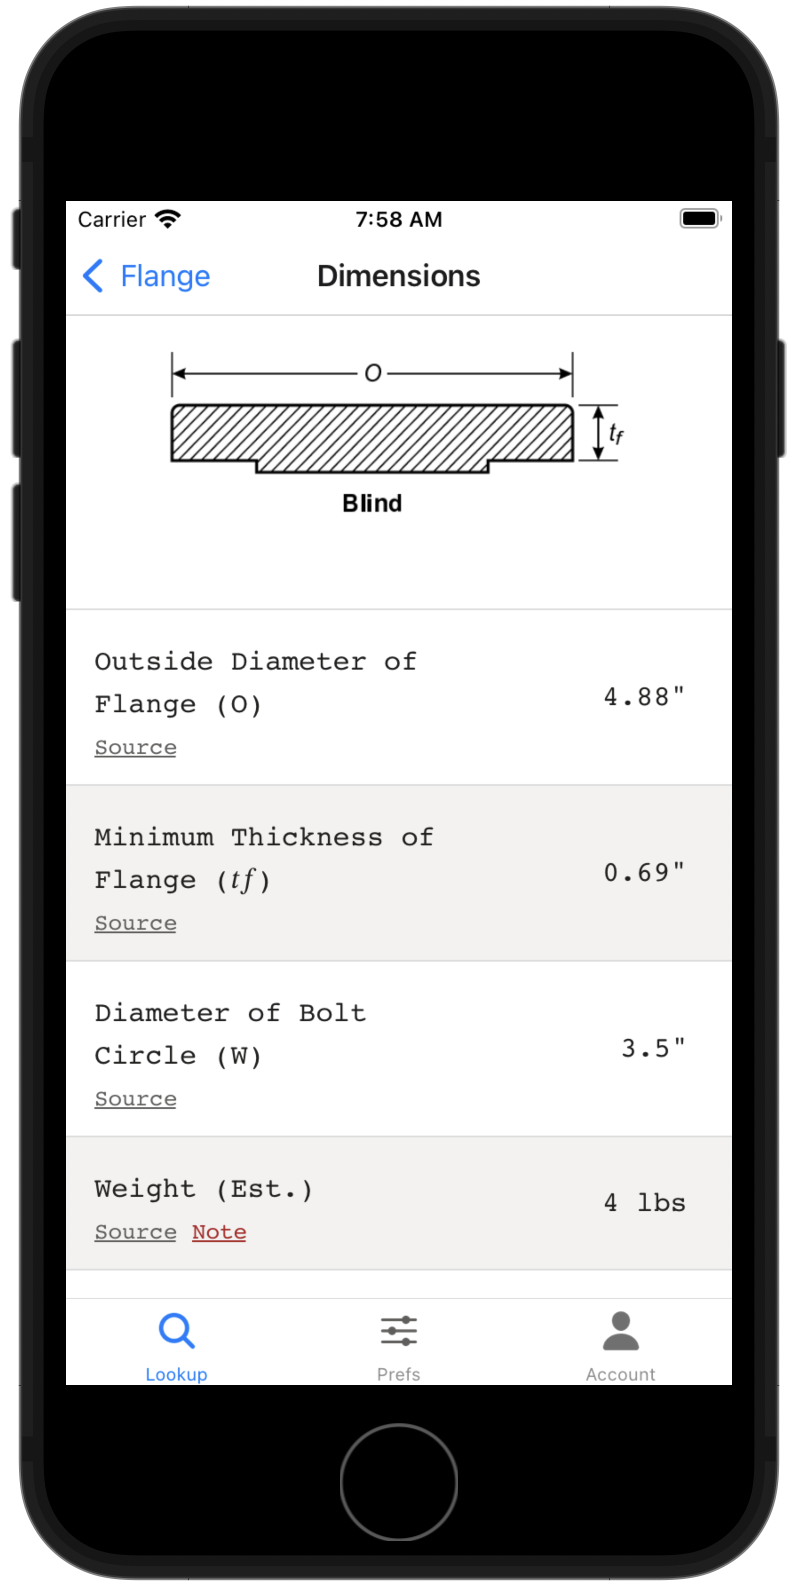 Screenshot of the Flange Bolt Chart app showing flange dimensions for blind flange.